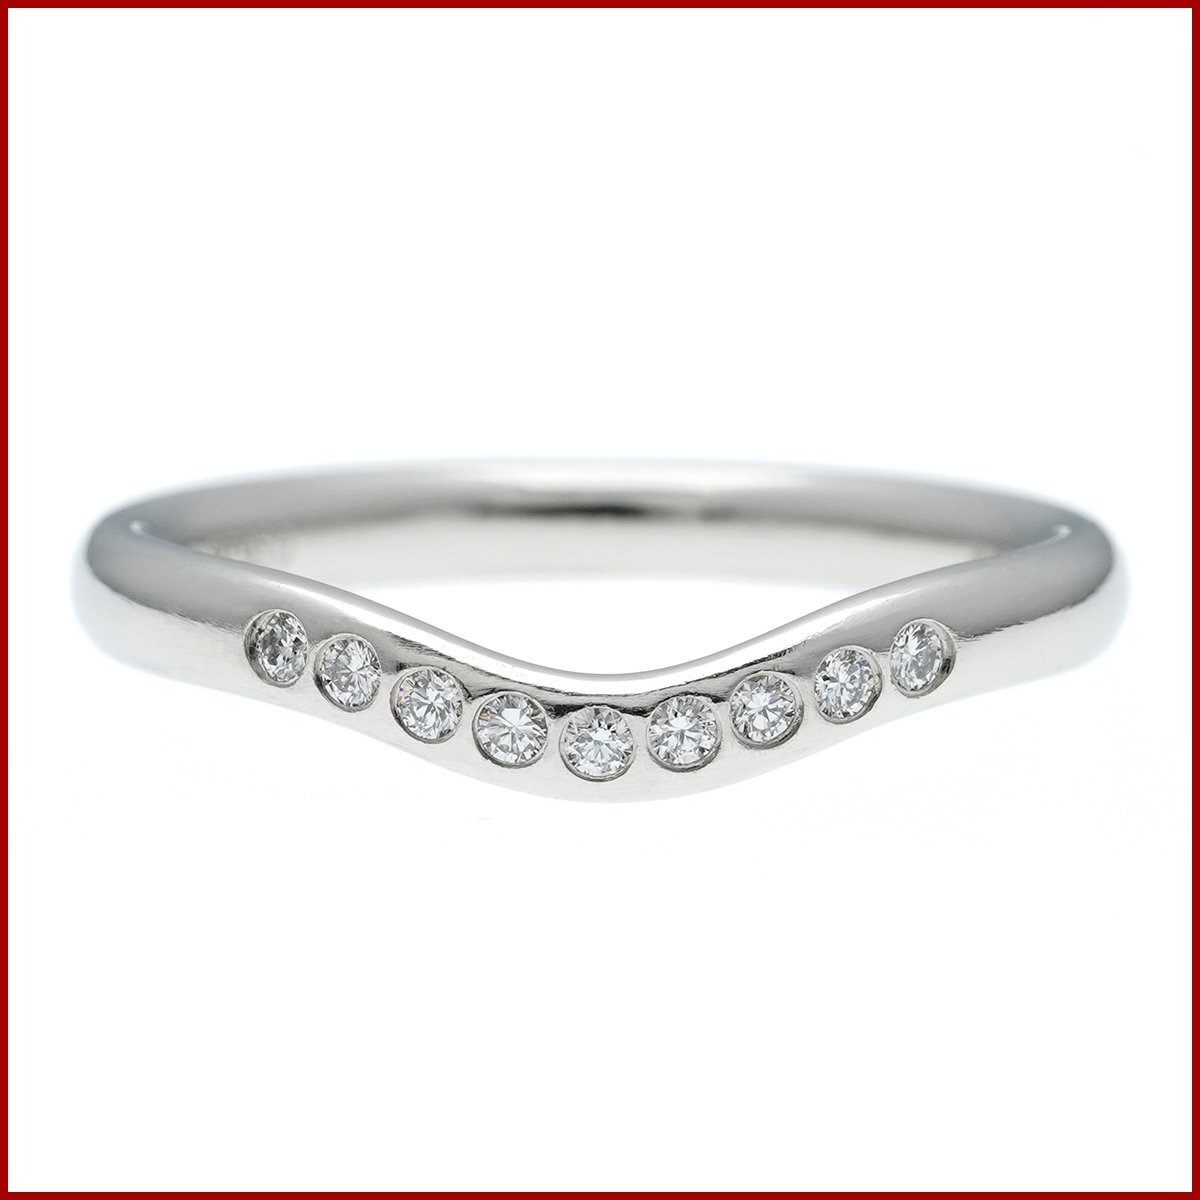 ...  кривая ... лента   кольцо    кольцо   Pt950  платиновый  2mm  алмаз  9 камень  8 номер    товар в хорошем состоянии   новый товар  отделка  сделано   почтовый пакет   реакция  возможно   стоимость доставки 300  йен 